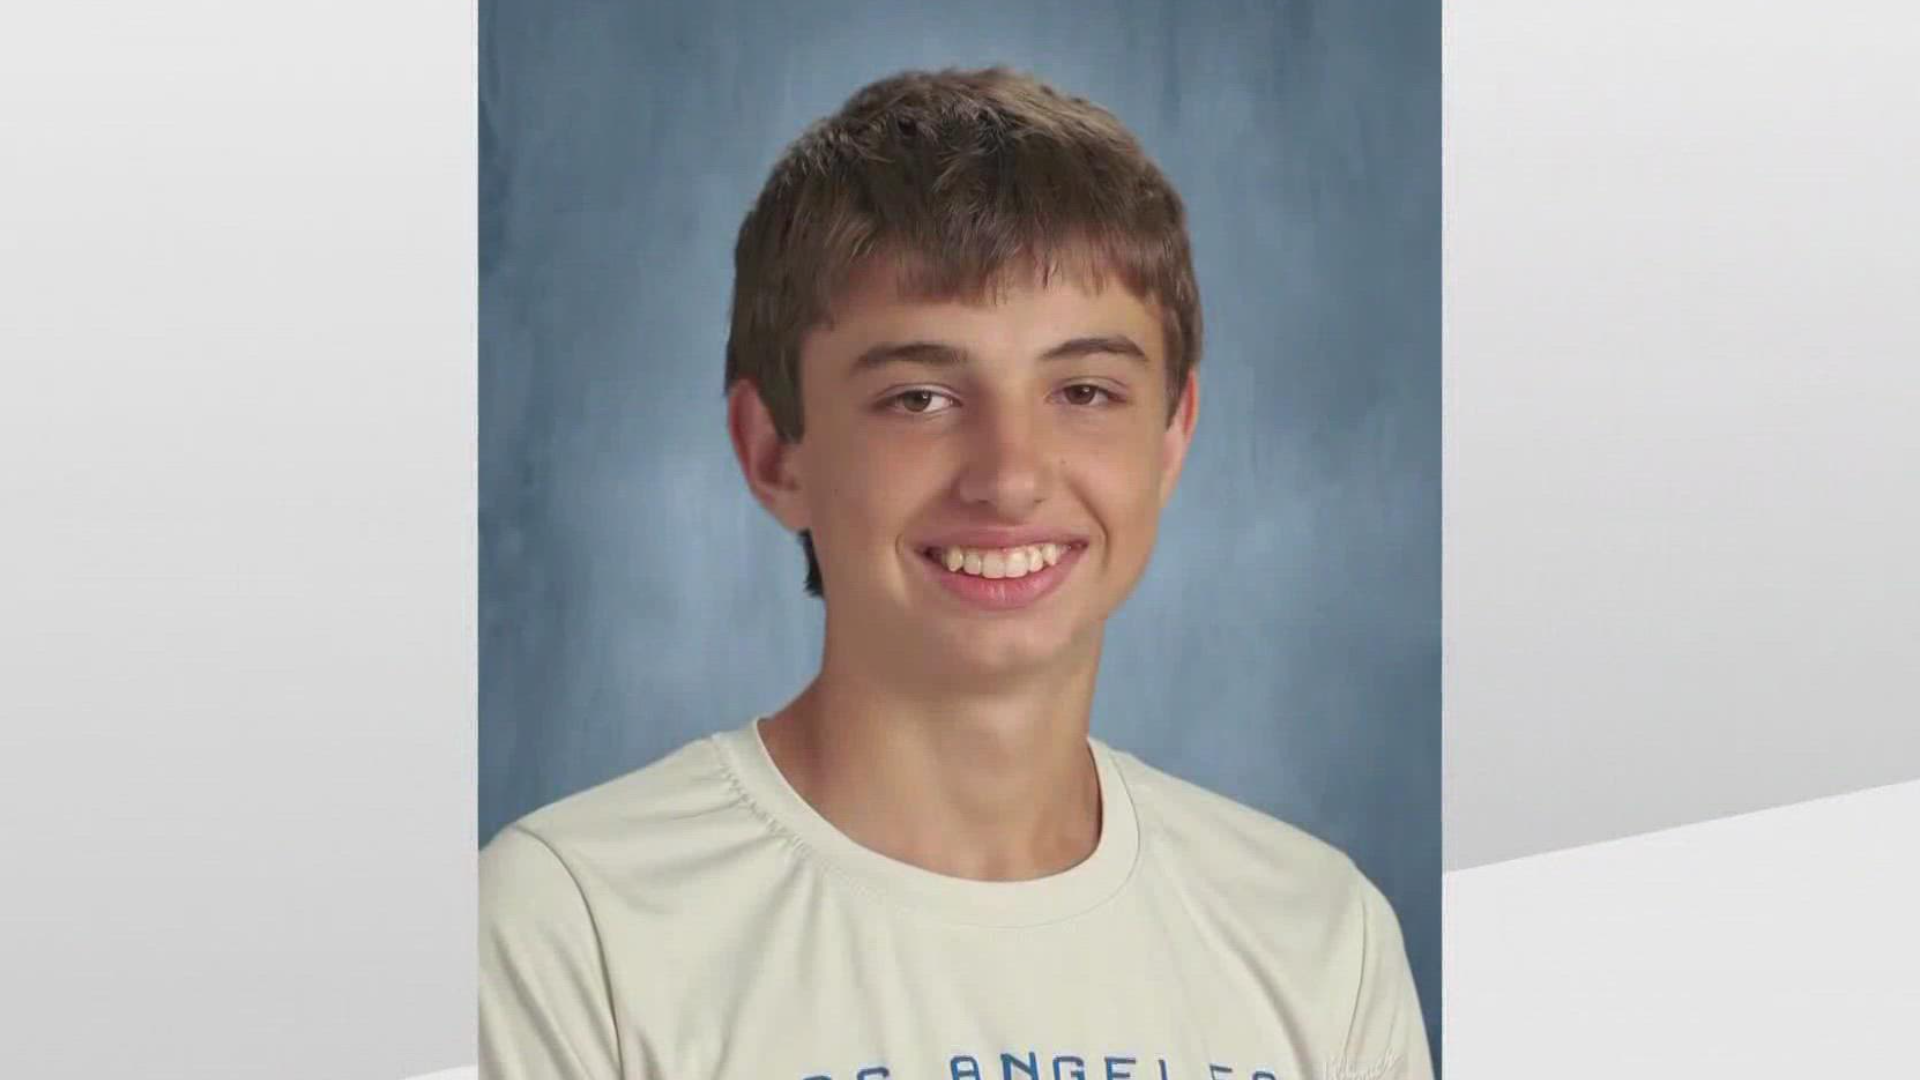 15-year-old Austin McEntyre was a freshman at Heard County High School.